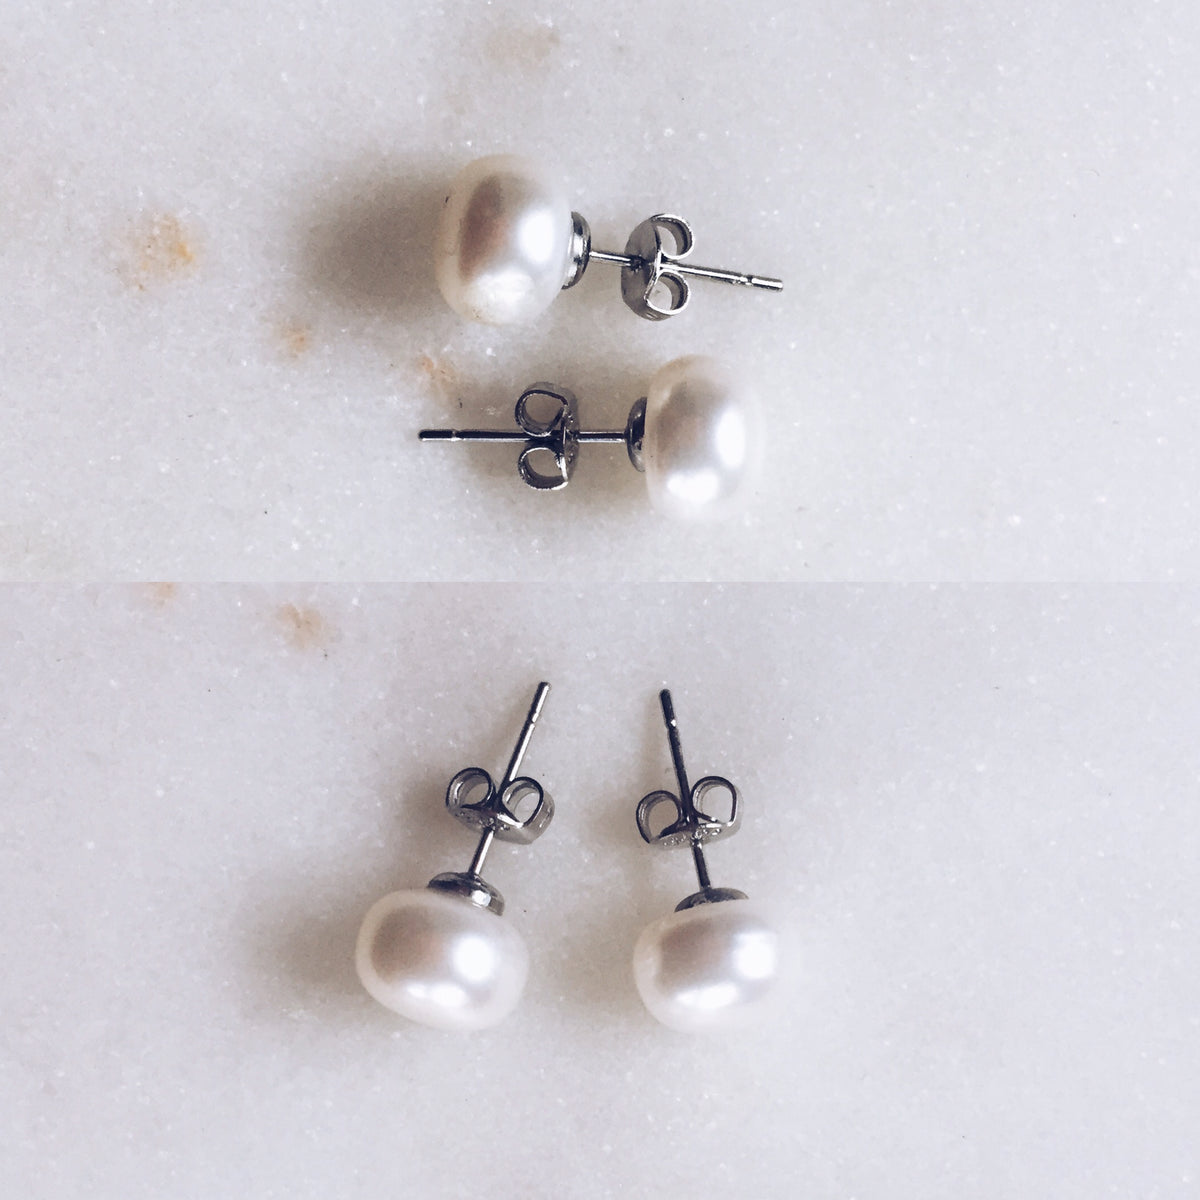 10mm ivory pearl drop earings,bridal pearl earrings,freshwater drop pearl earrings,pearl earrings for bridesmaid gifts,wedding earrings